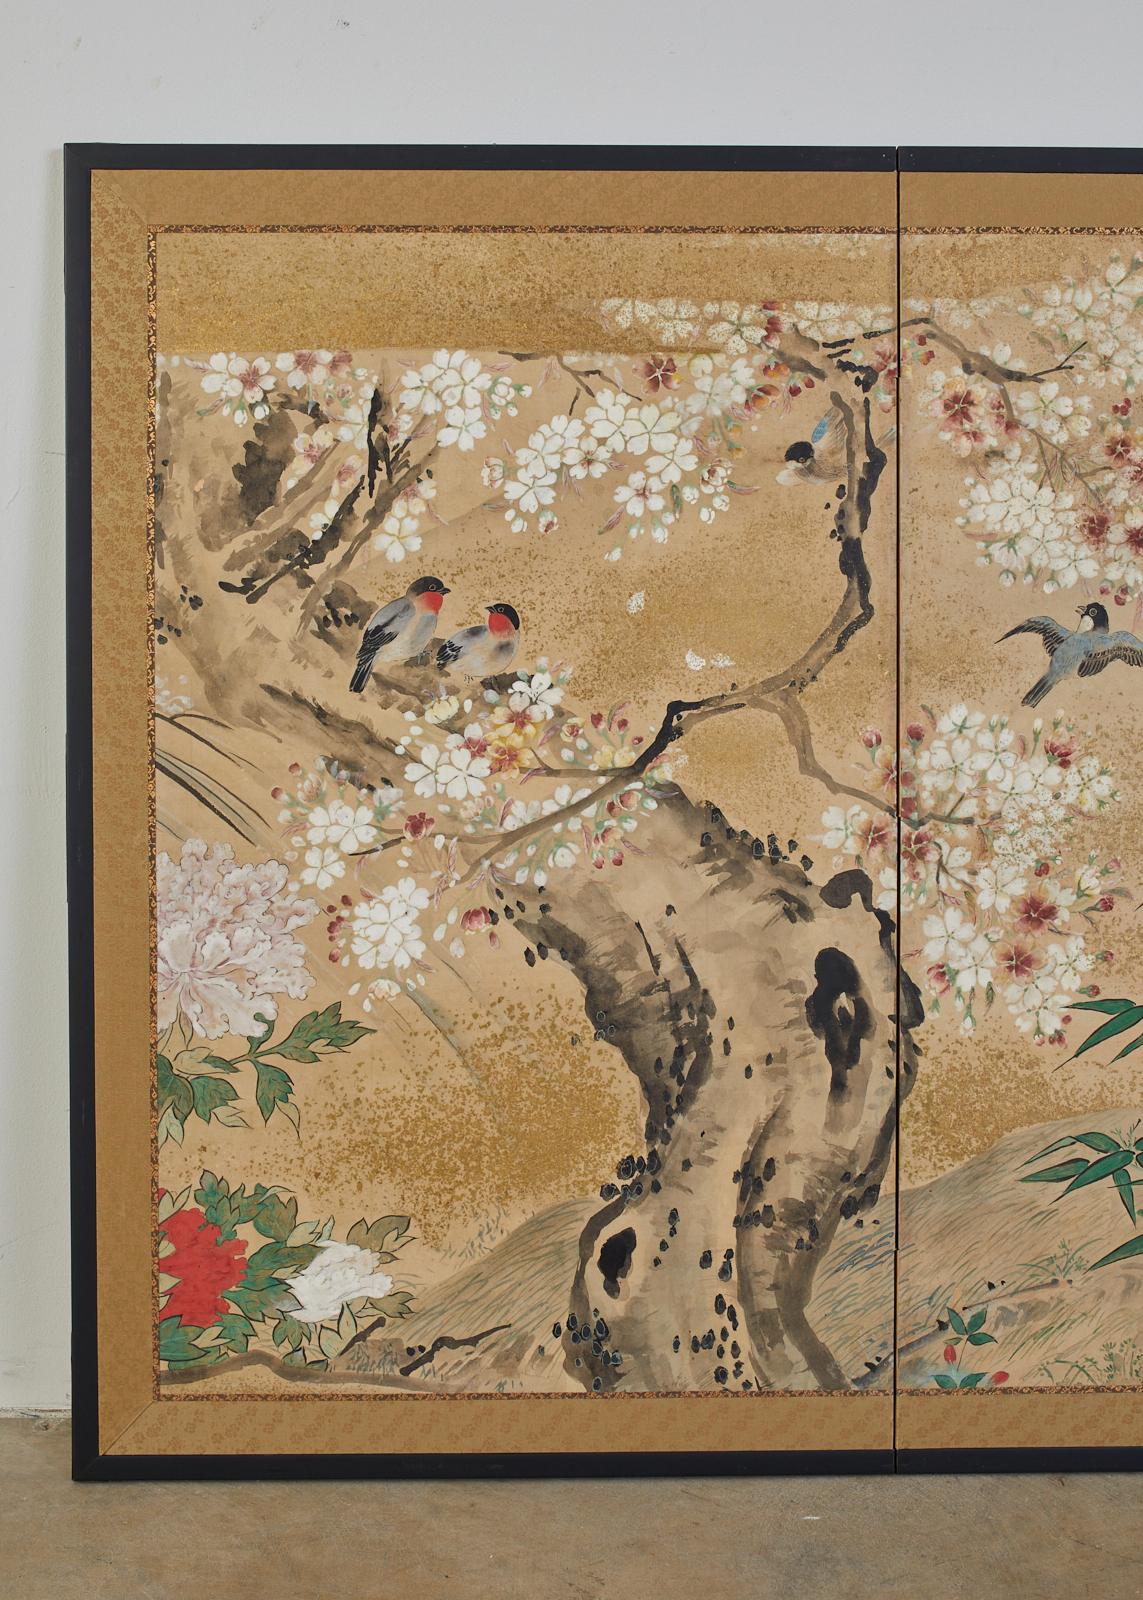 Exceptionnel écran japonais à deux panneaux de la période Meiji, vers 1900. Avec des oiseaux chanteurs au milieu de cerisiers sakura et de pivoines en fleurs. Réalisé dans le style de l'école Nihonga sur du papier de mûrier fabriqué à la main. De